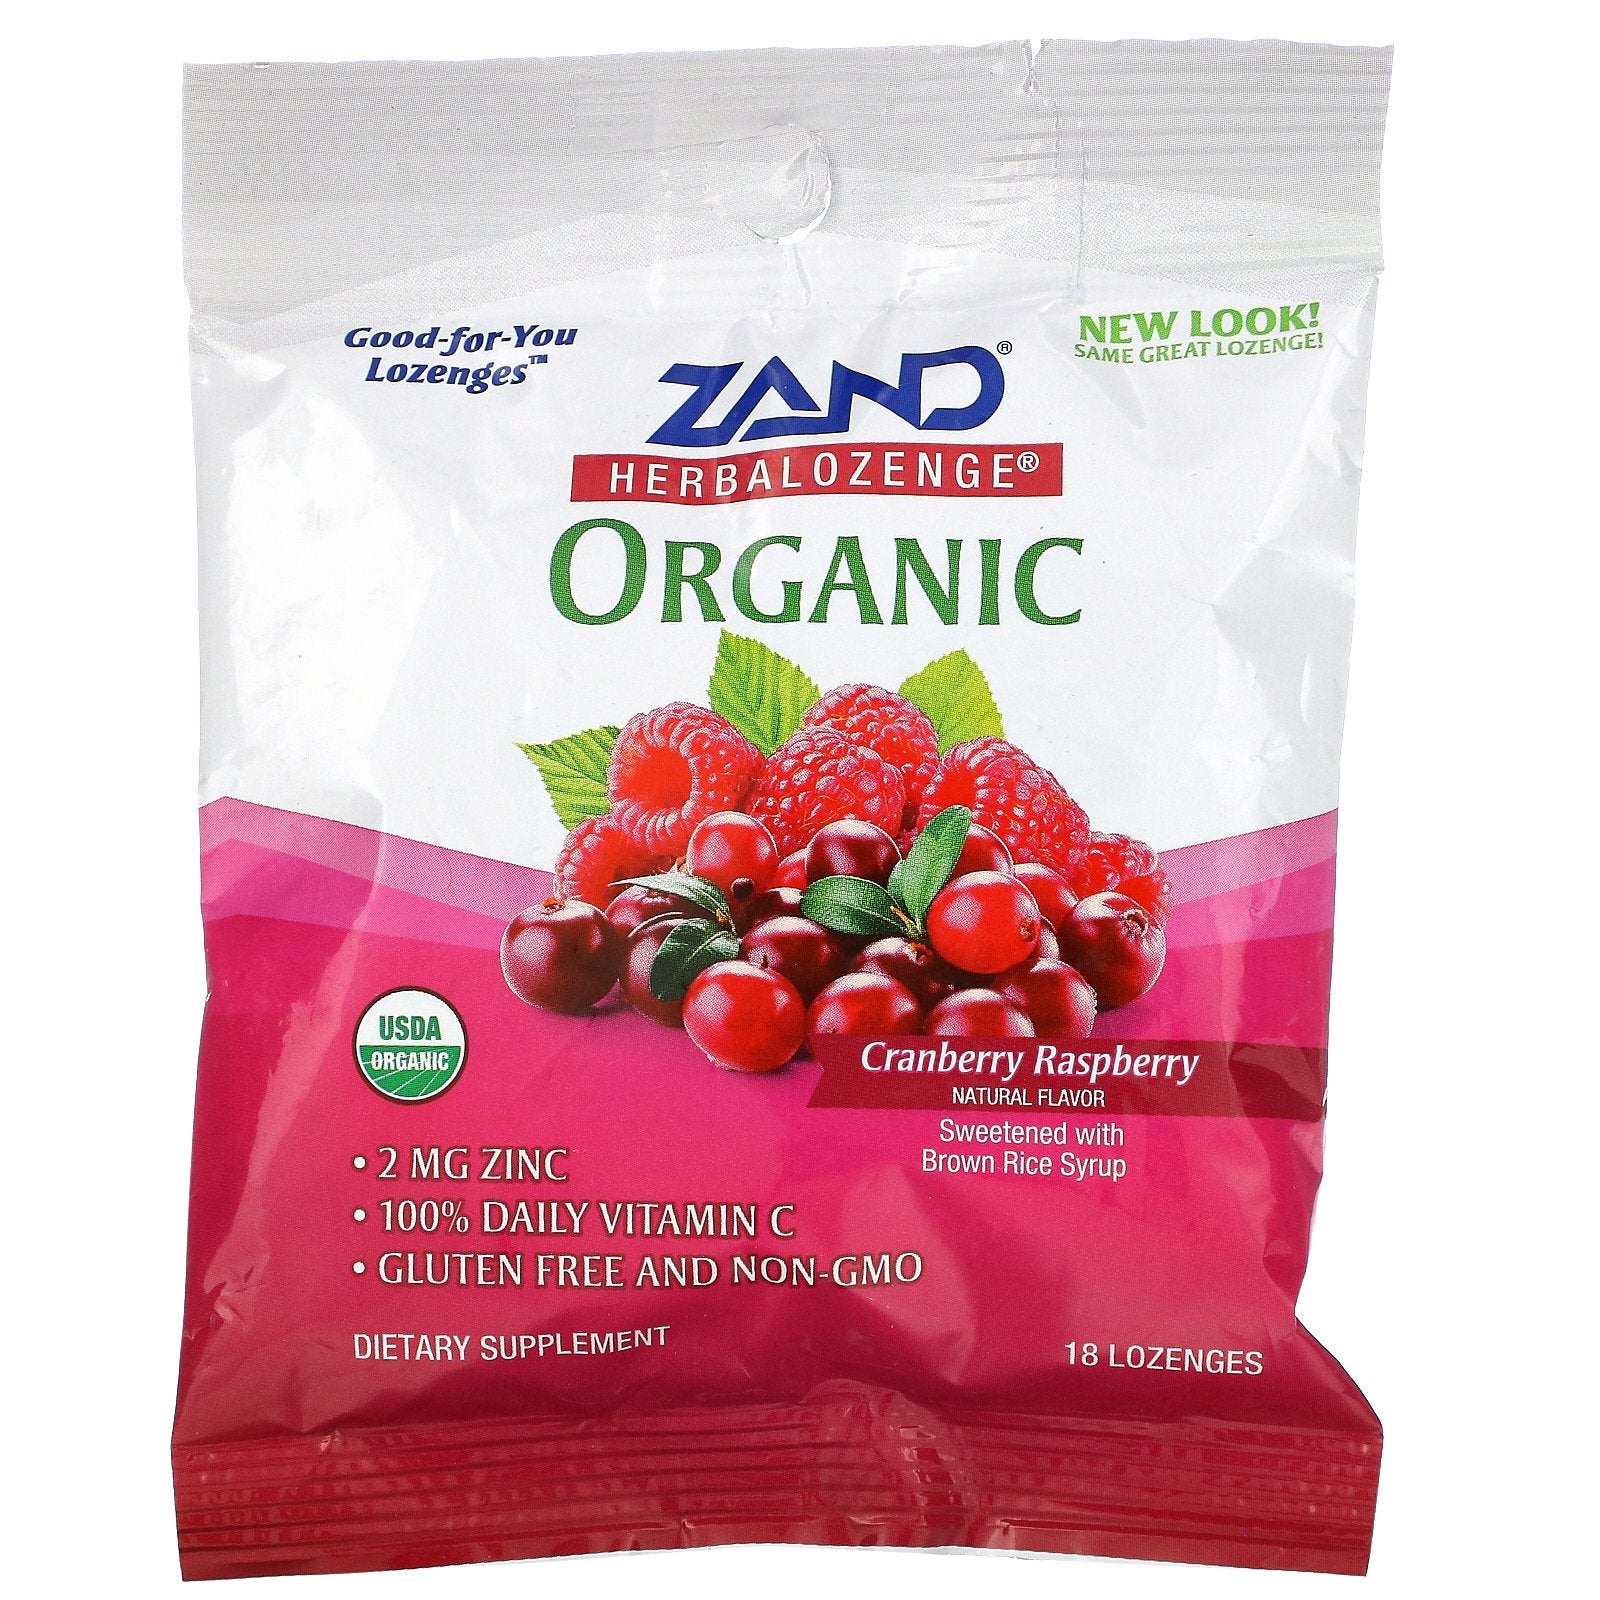 Zand, Organic Herbalozenge, Cranberry Raspberry, 18 Lozenges